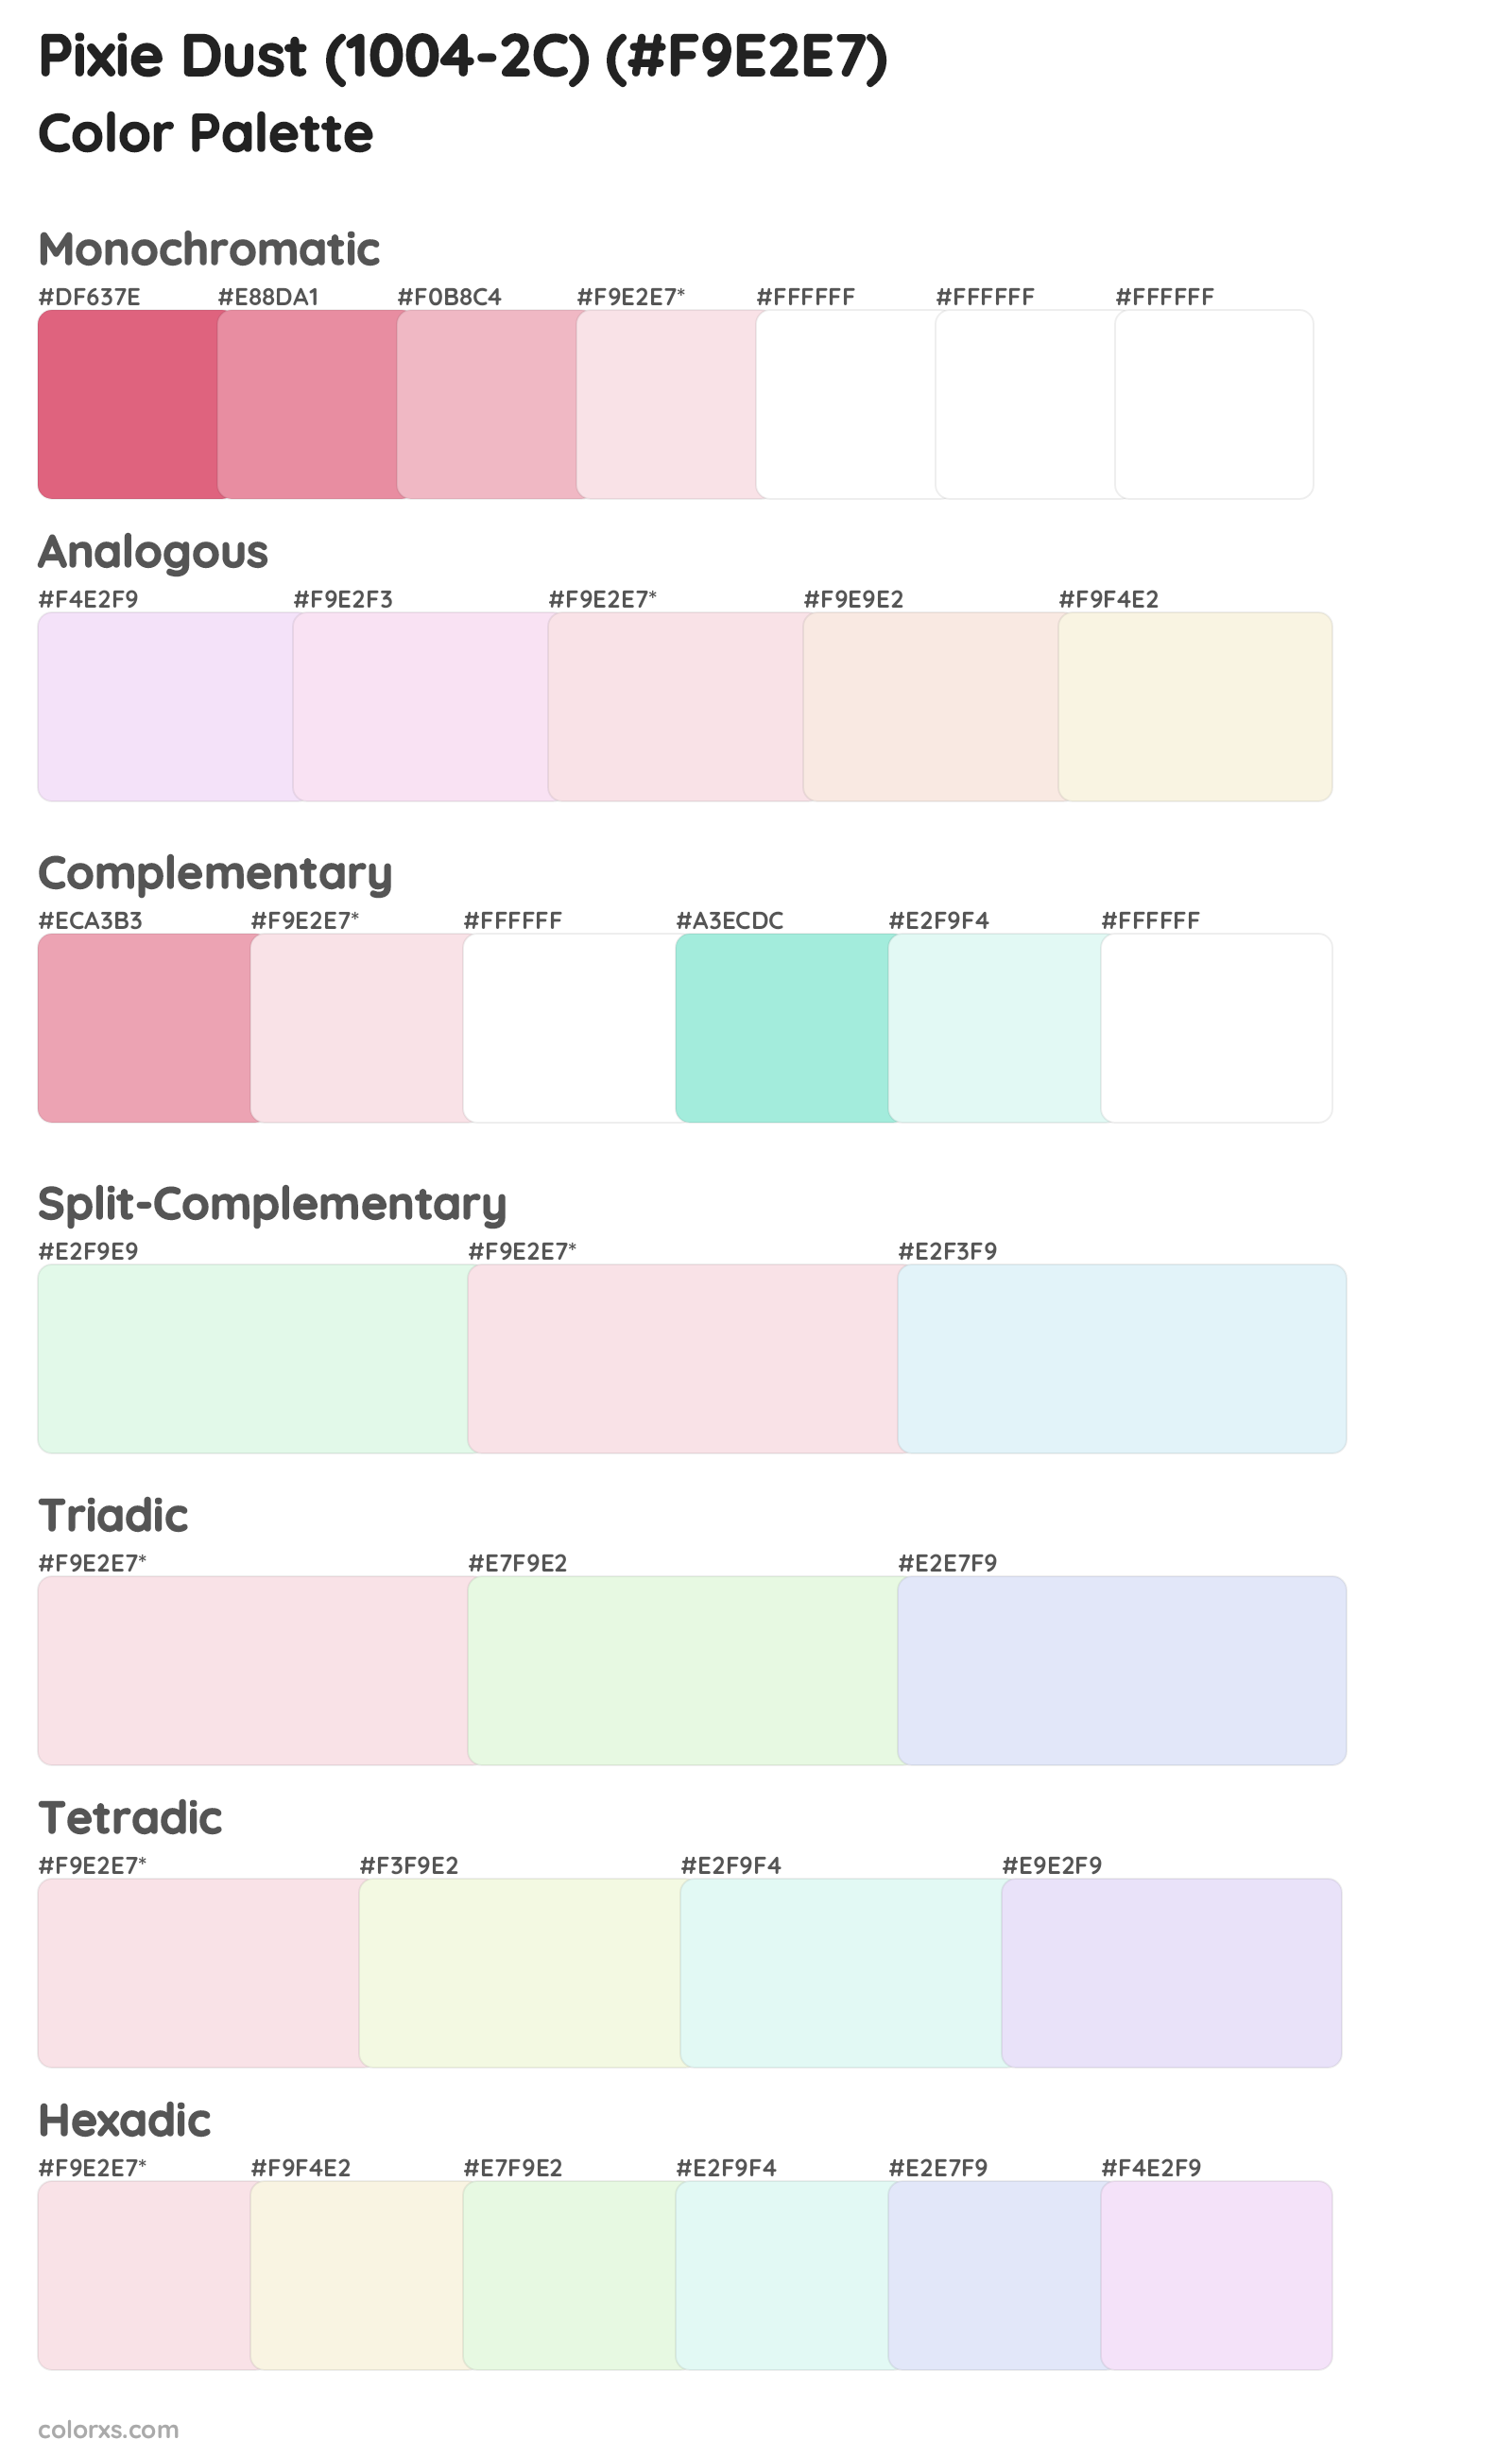 Pixie Dust (1004-2C) Color Scheme Palettes